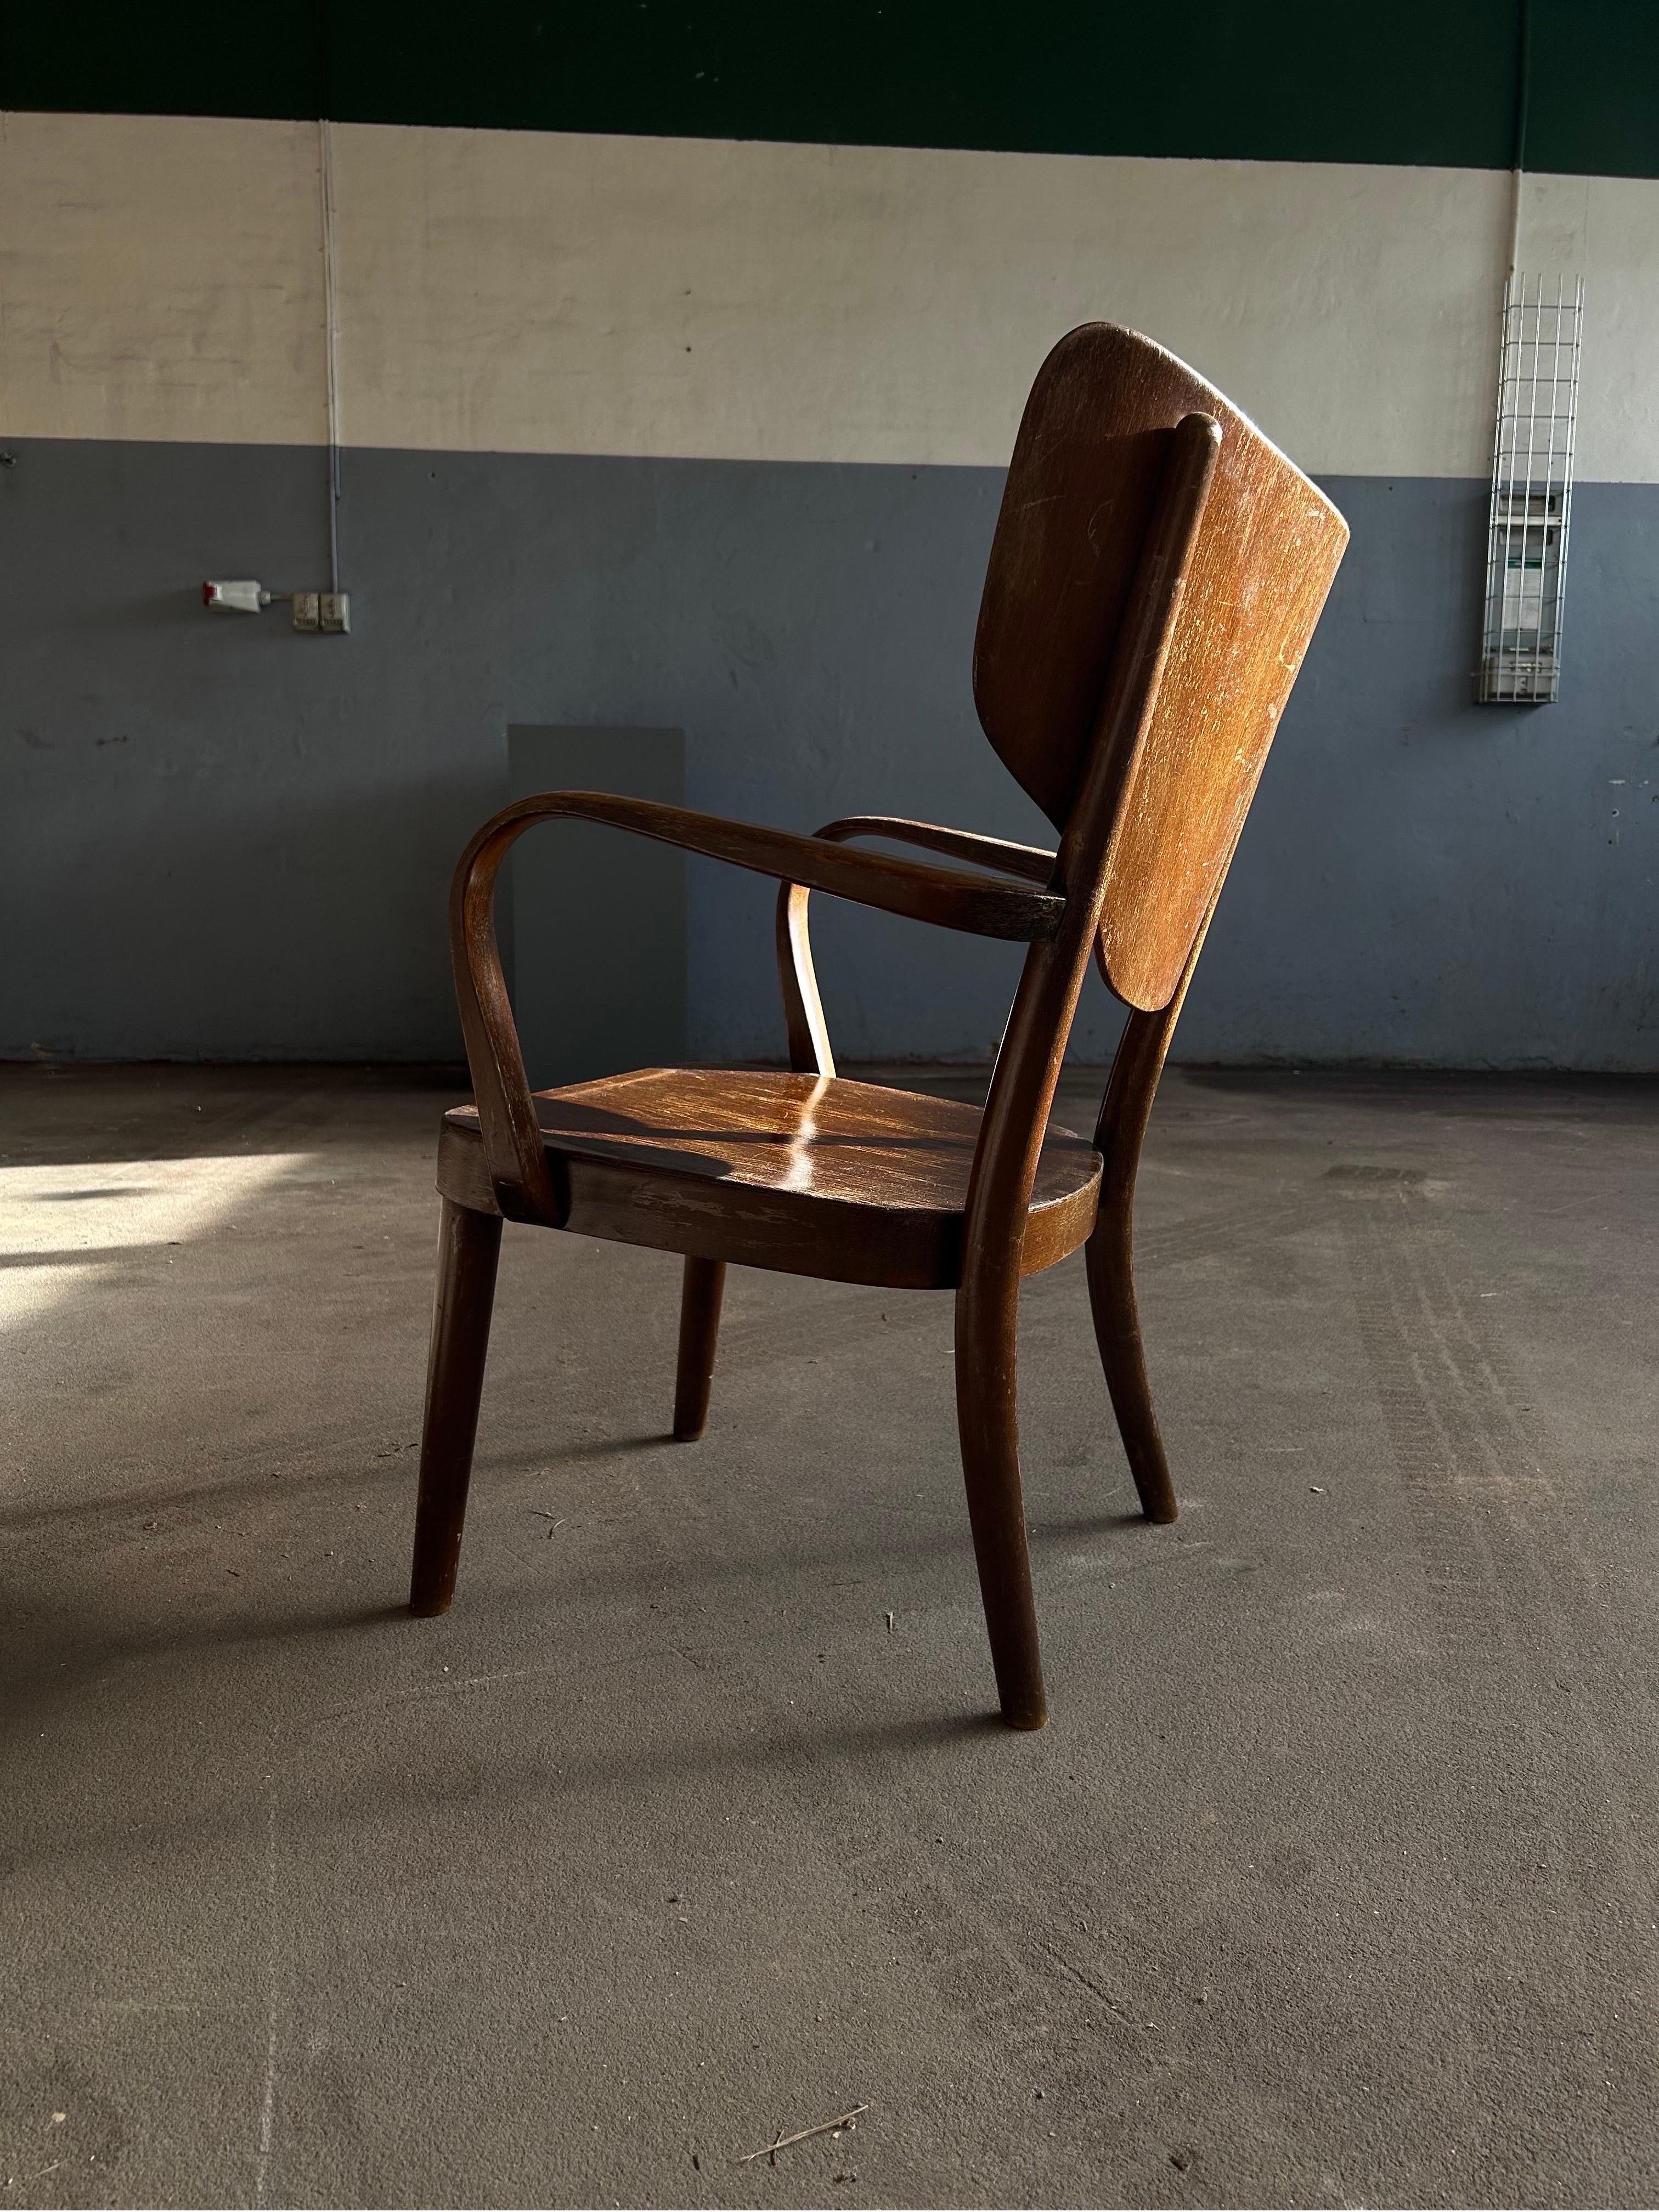 Rare chaise longue Magnus Hansen en bois de hêtre teinté foncé, réalisée par Fritz Hansen dans les années 1940.

La chaise est en bon état avec une belle patine et prêt à prendre dans l'utilisation, la chaise est le détail parfait à n'importe quel